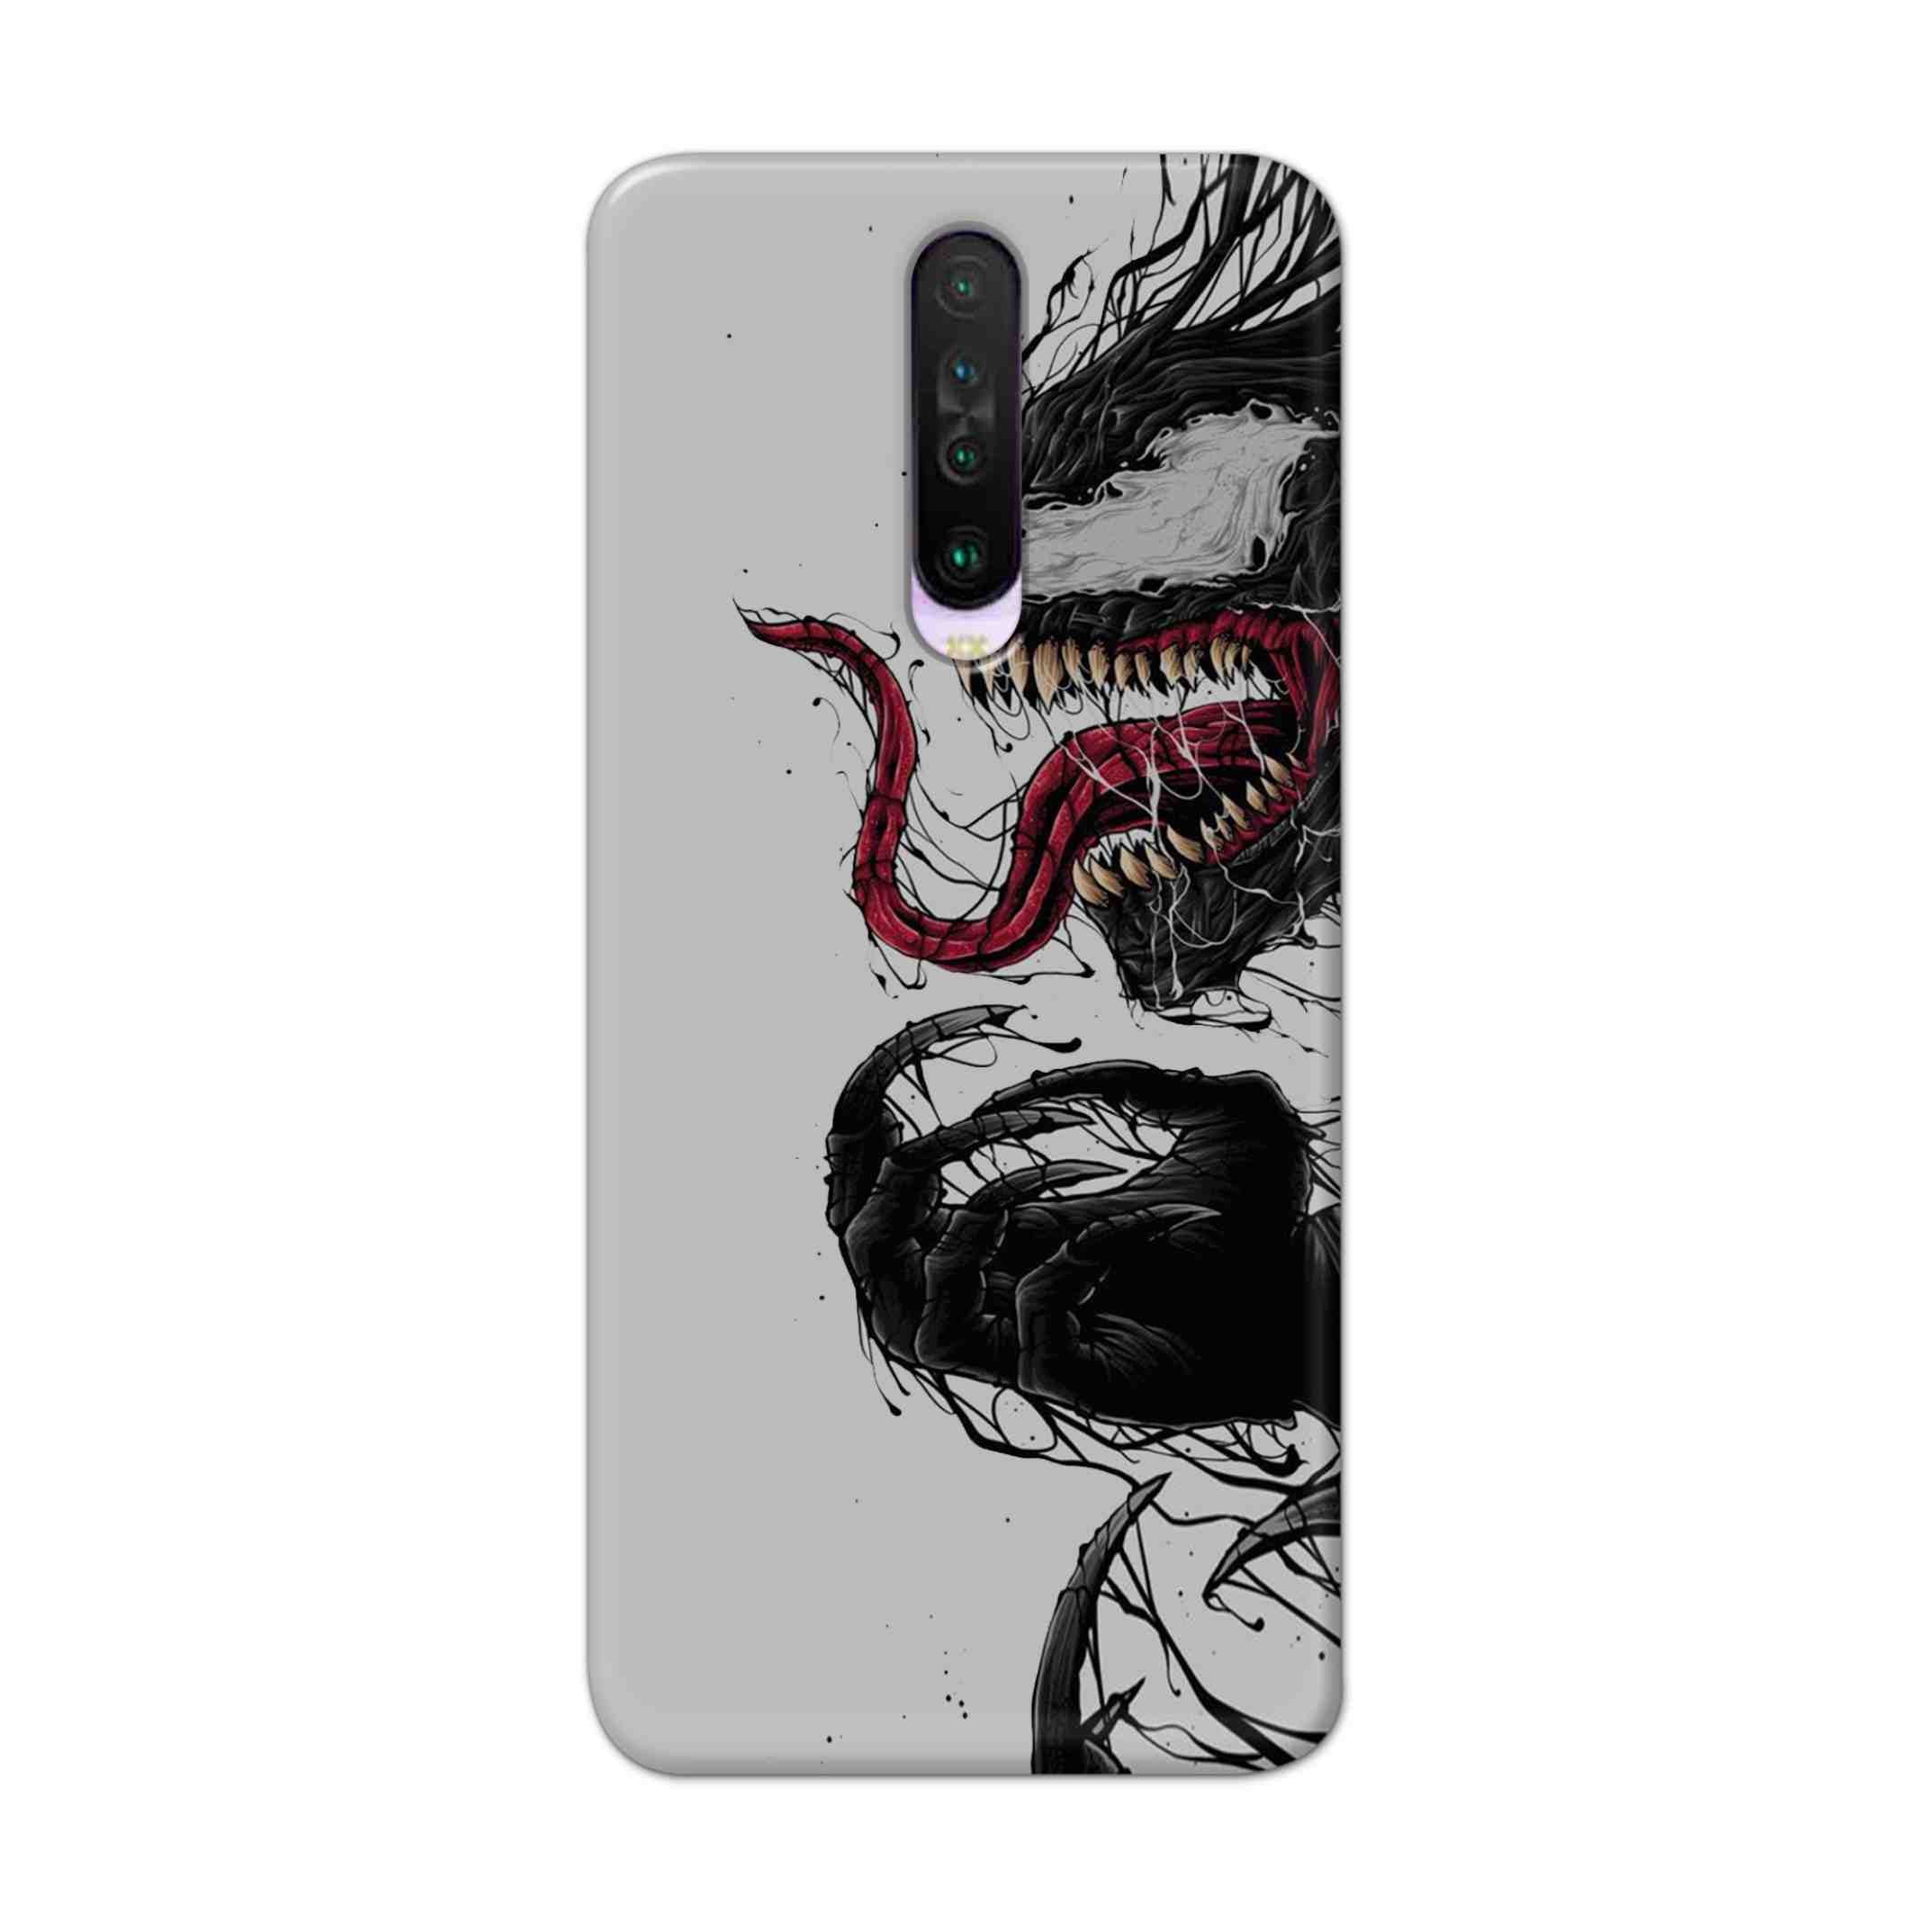 Buy Venom Crazy Hard Back Mobile Phone Case Cover For Poco X2 Online